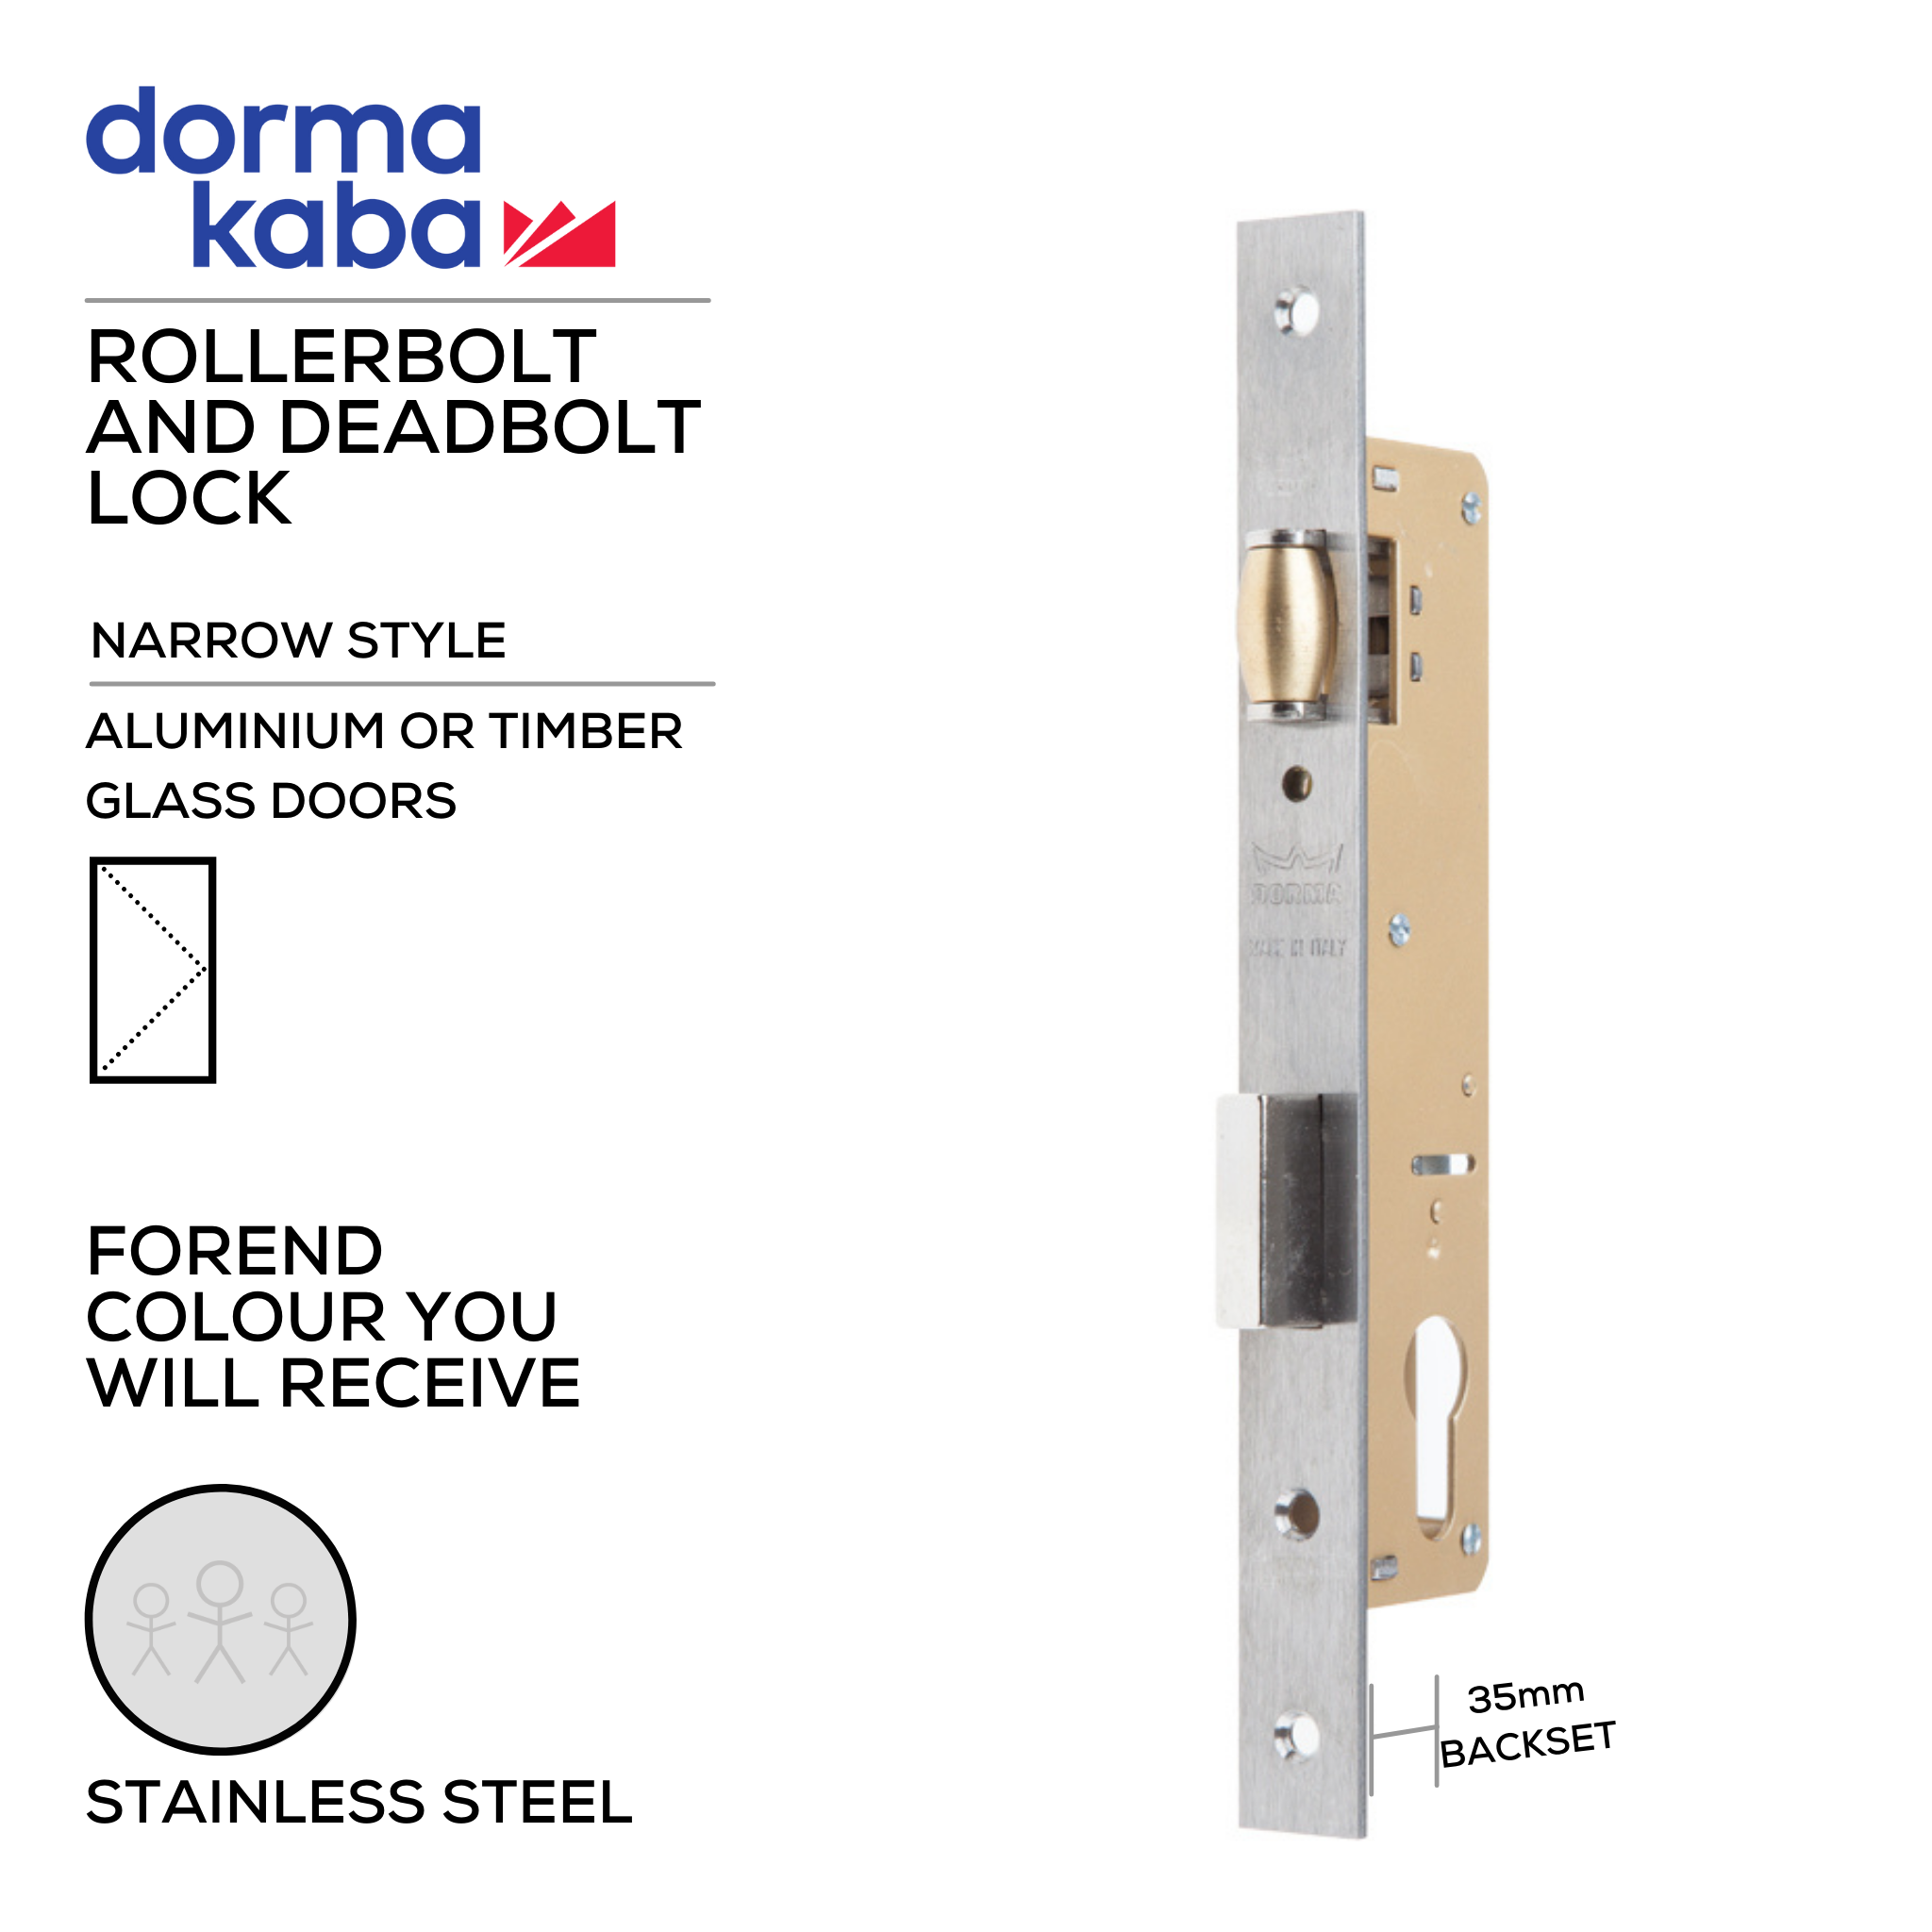 D02835 35mm, Narrow Style, Rollerbolt & Deadbolt Lock, Euro Cylinder, Excluding Cylinder, 35mm (Backset), Stainless Steel, DORMAKABA